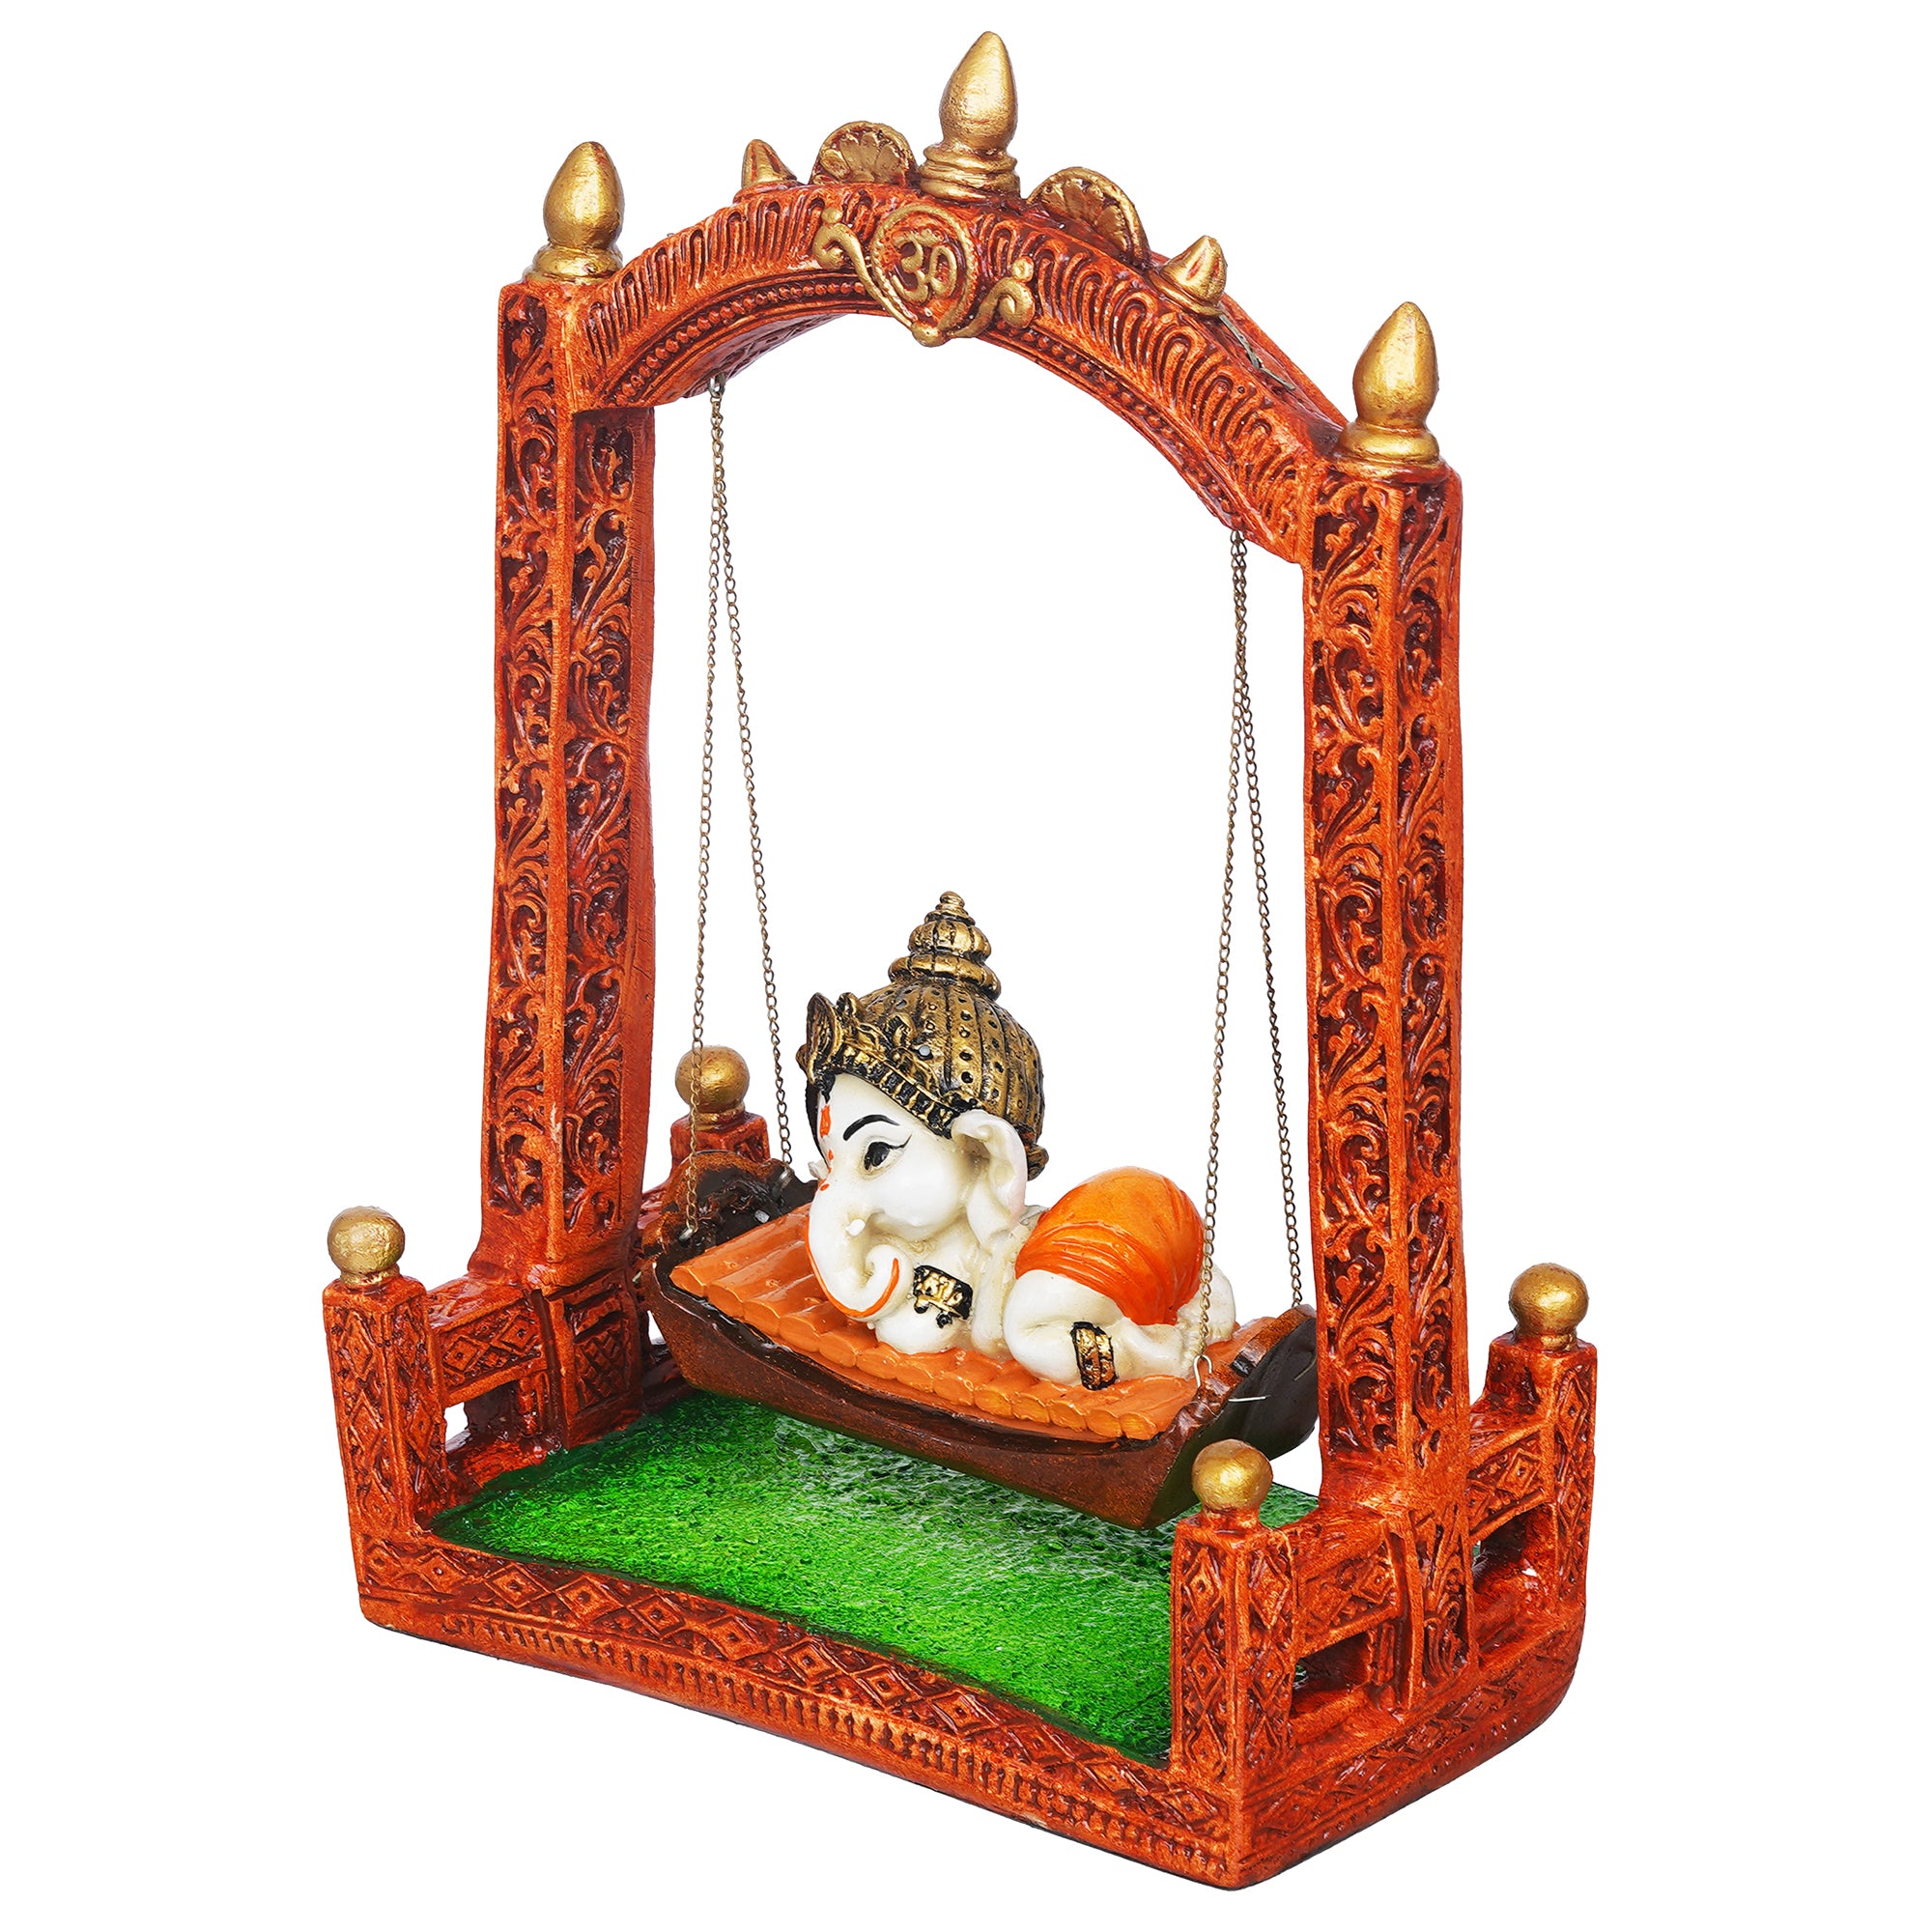 eCraftIndia Multicolor Polyresin Lord Ganesha Idol Resting On A Swing Decorative Showpiece 7